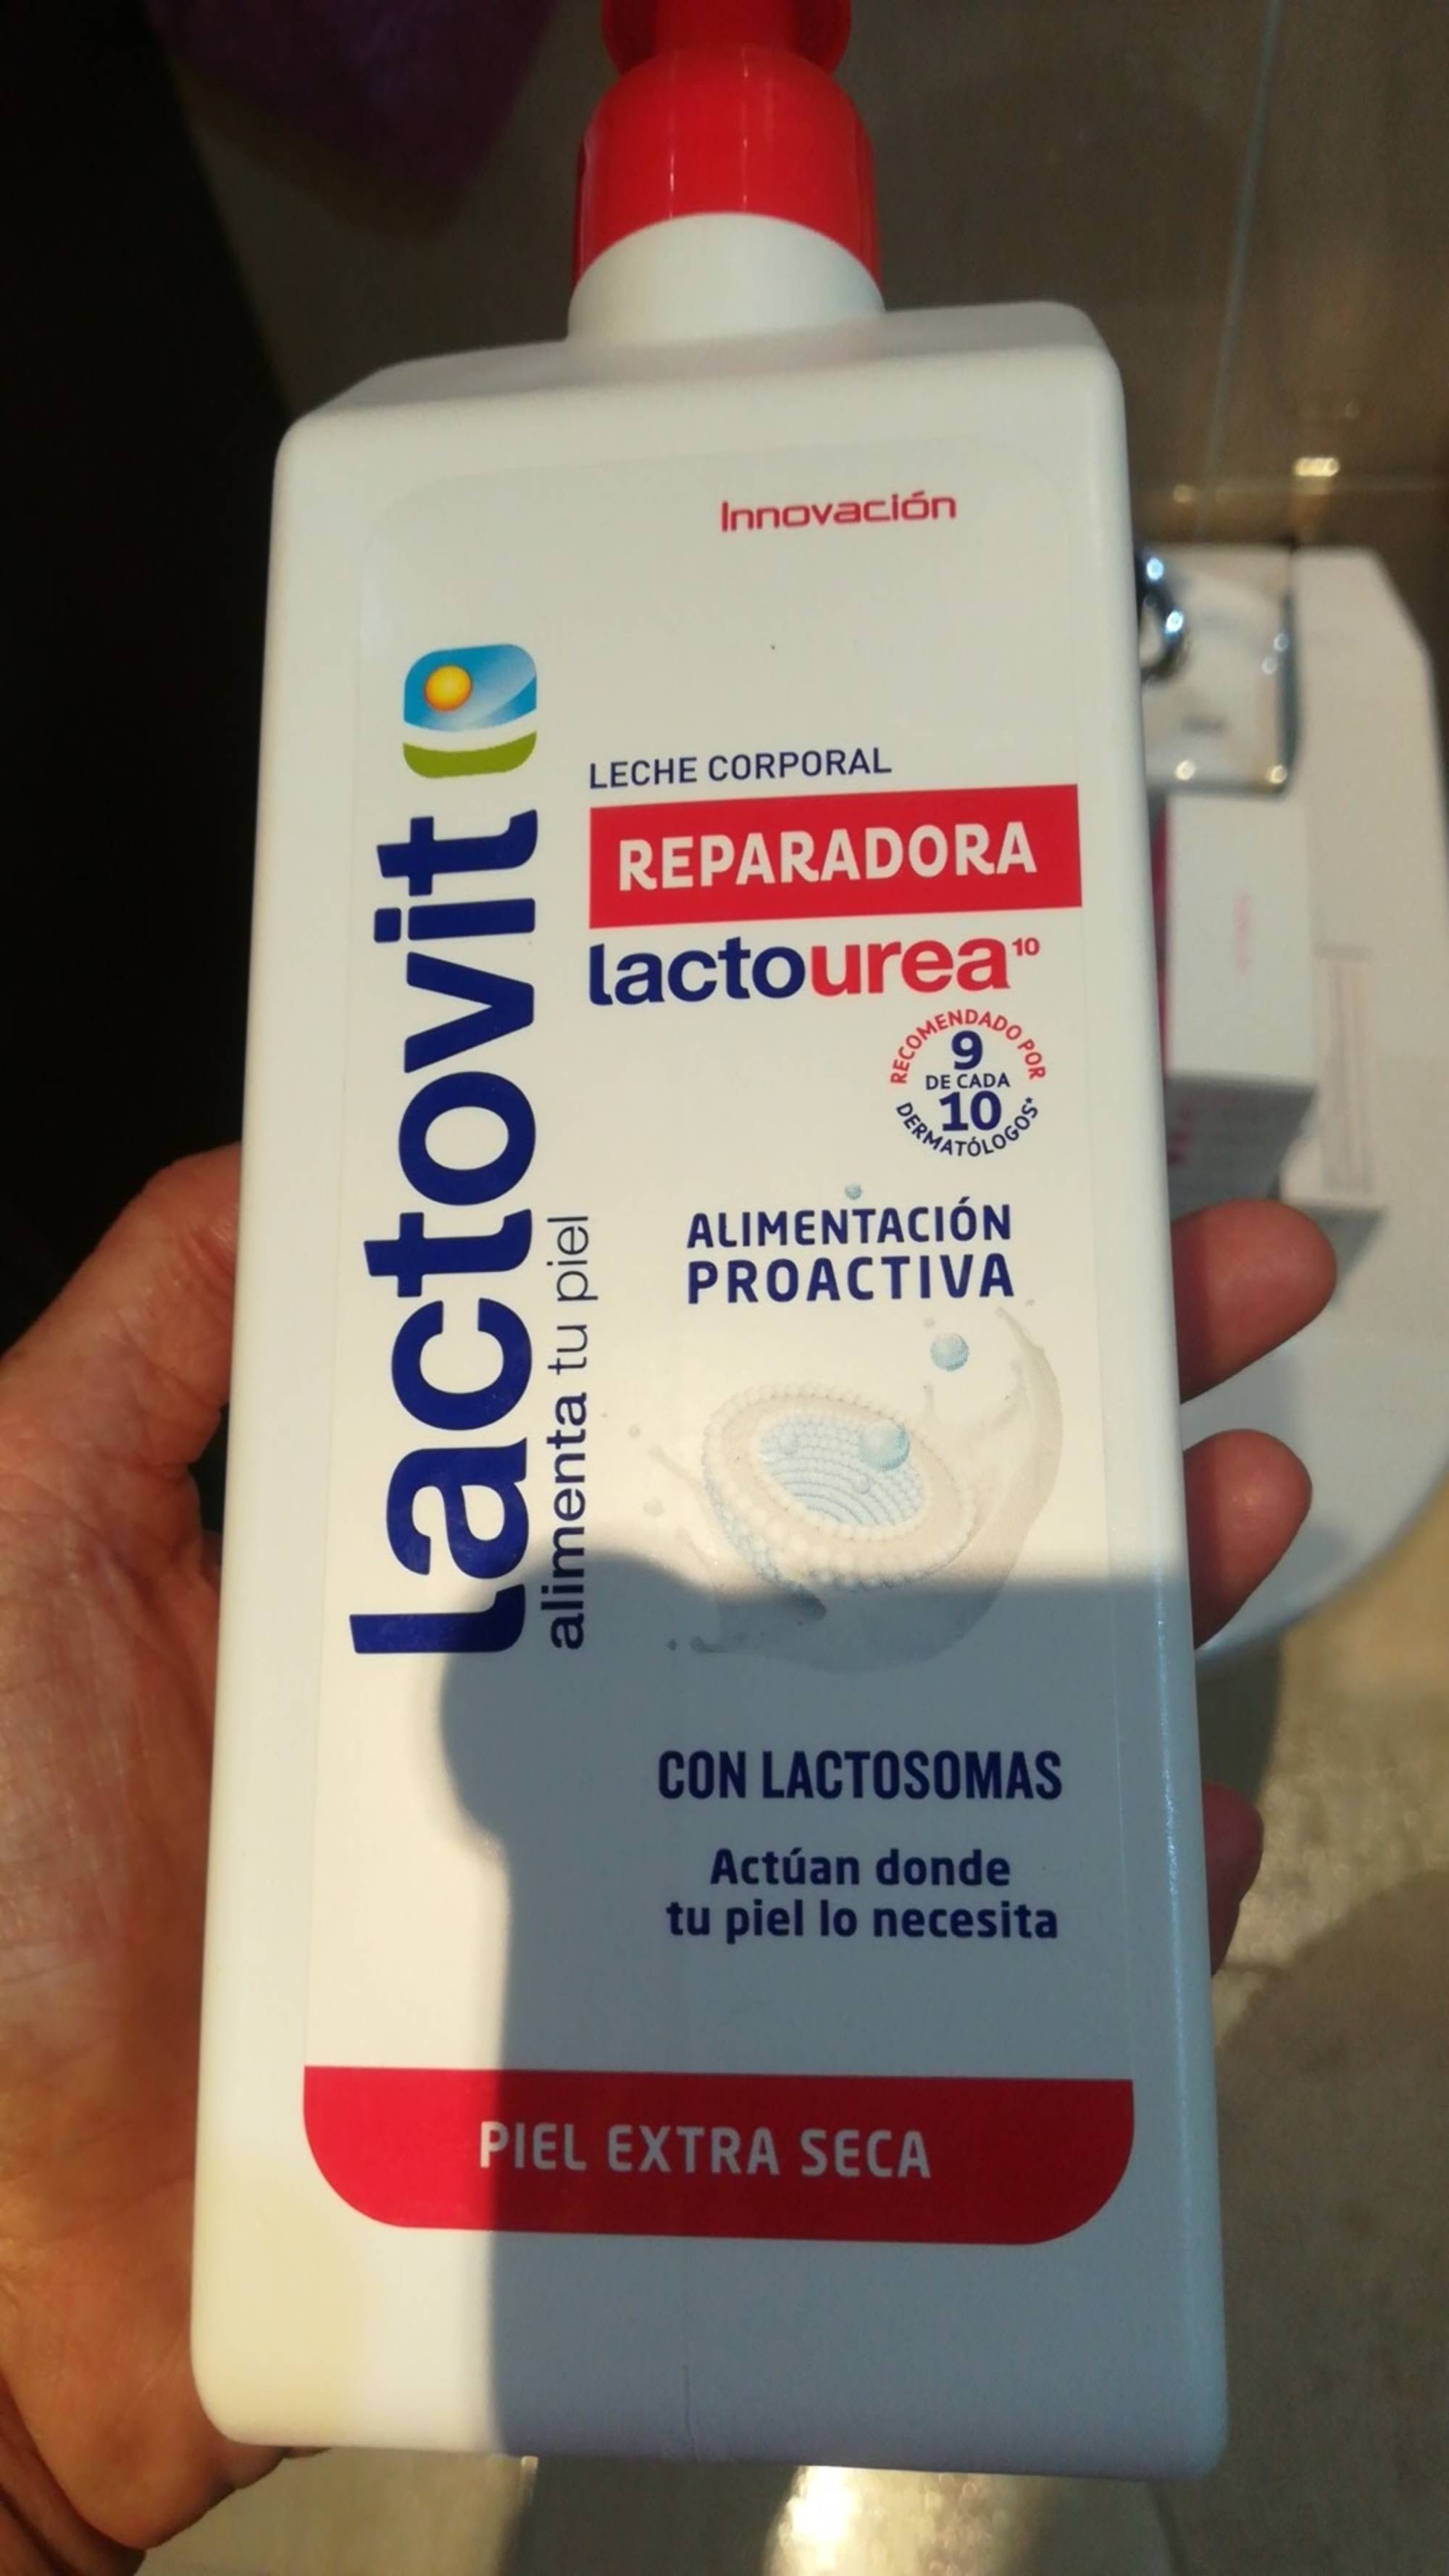 LACTOVIT - Lactourea - Leche corporal reparadora